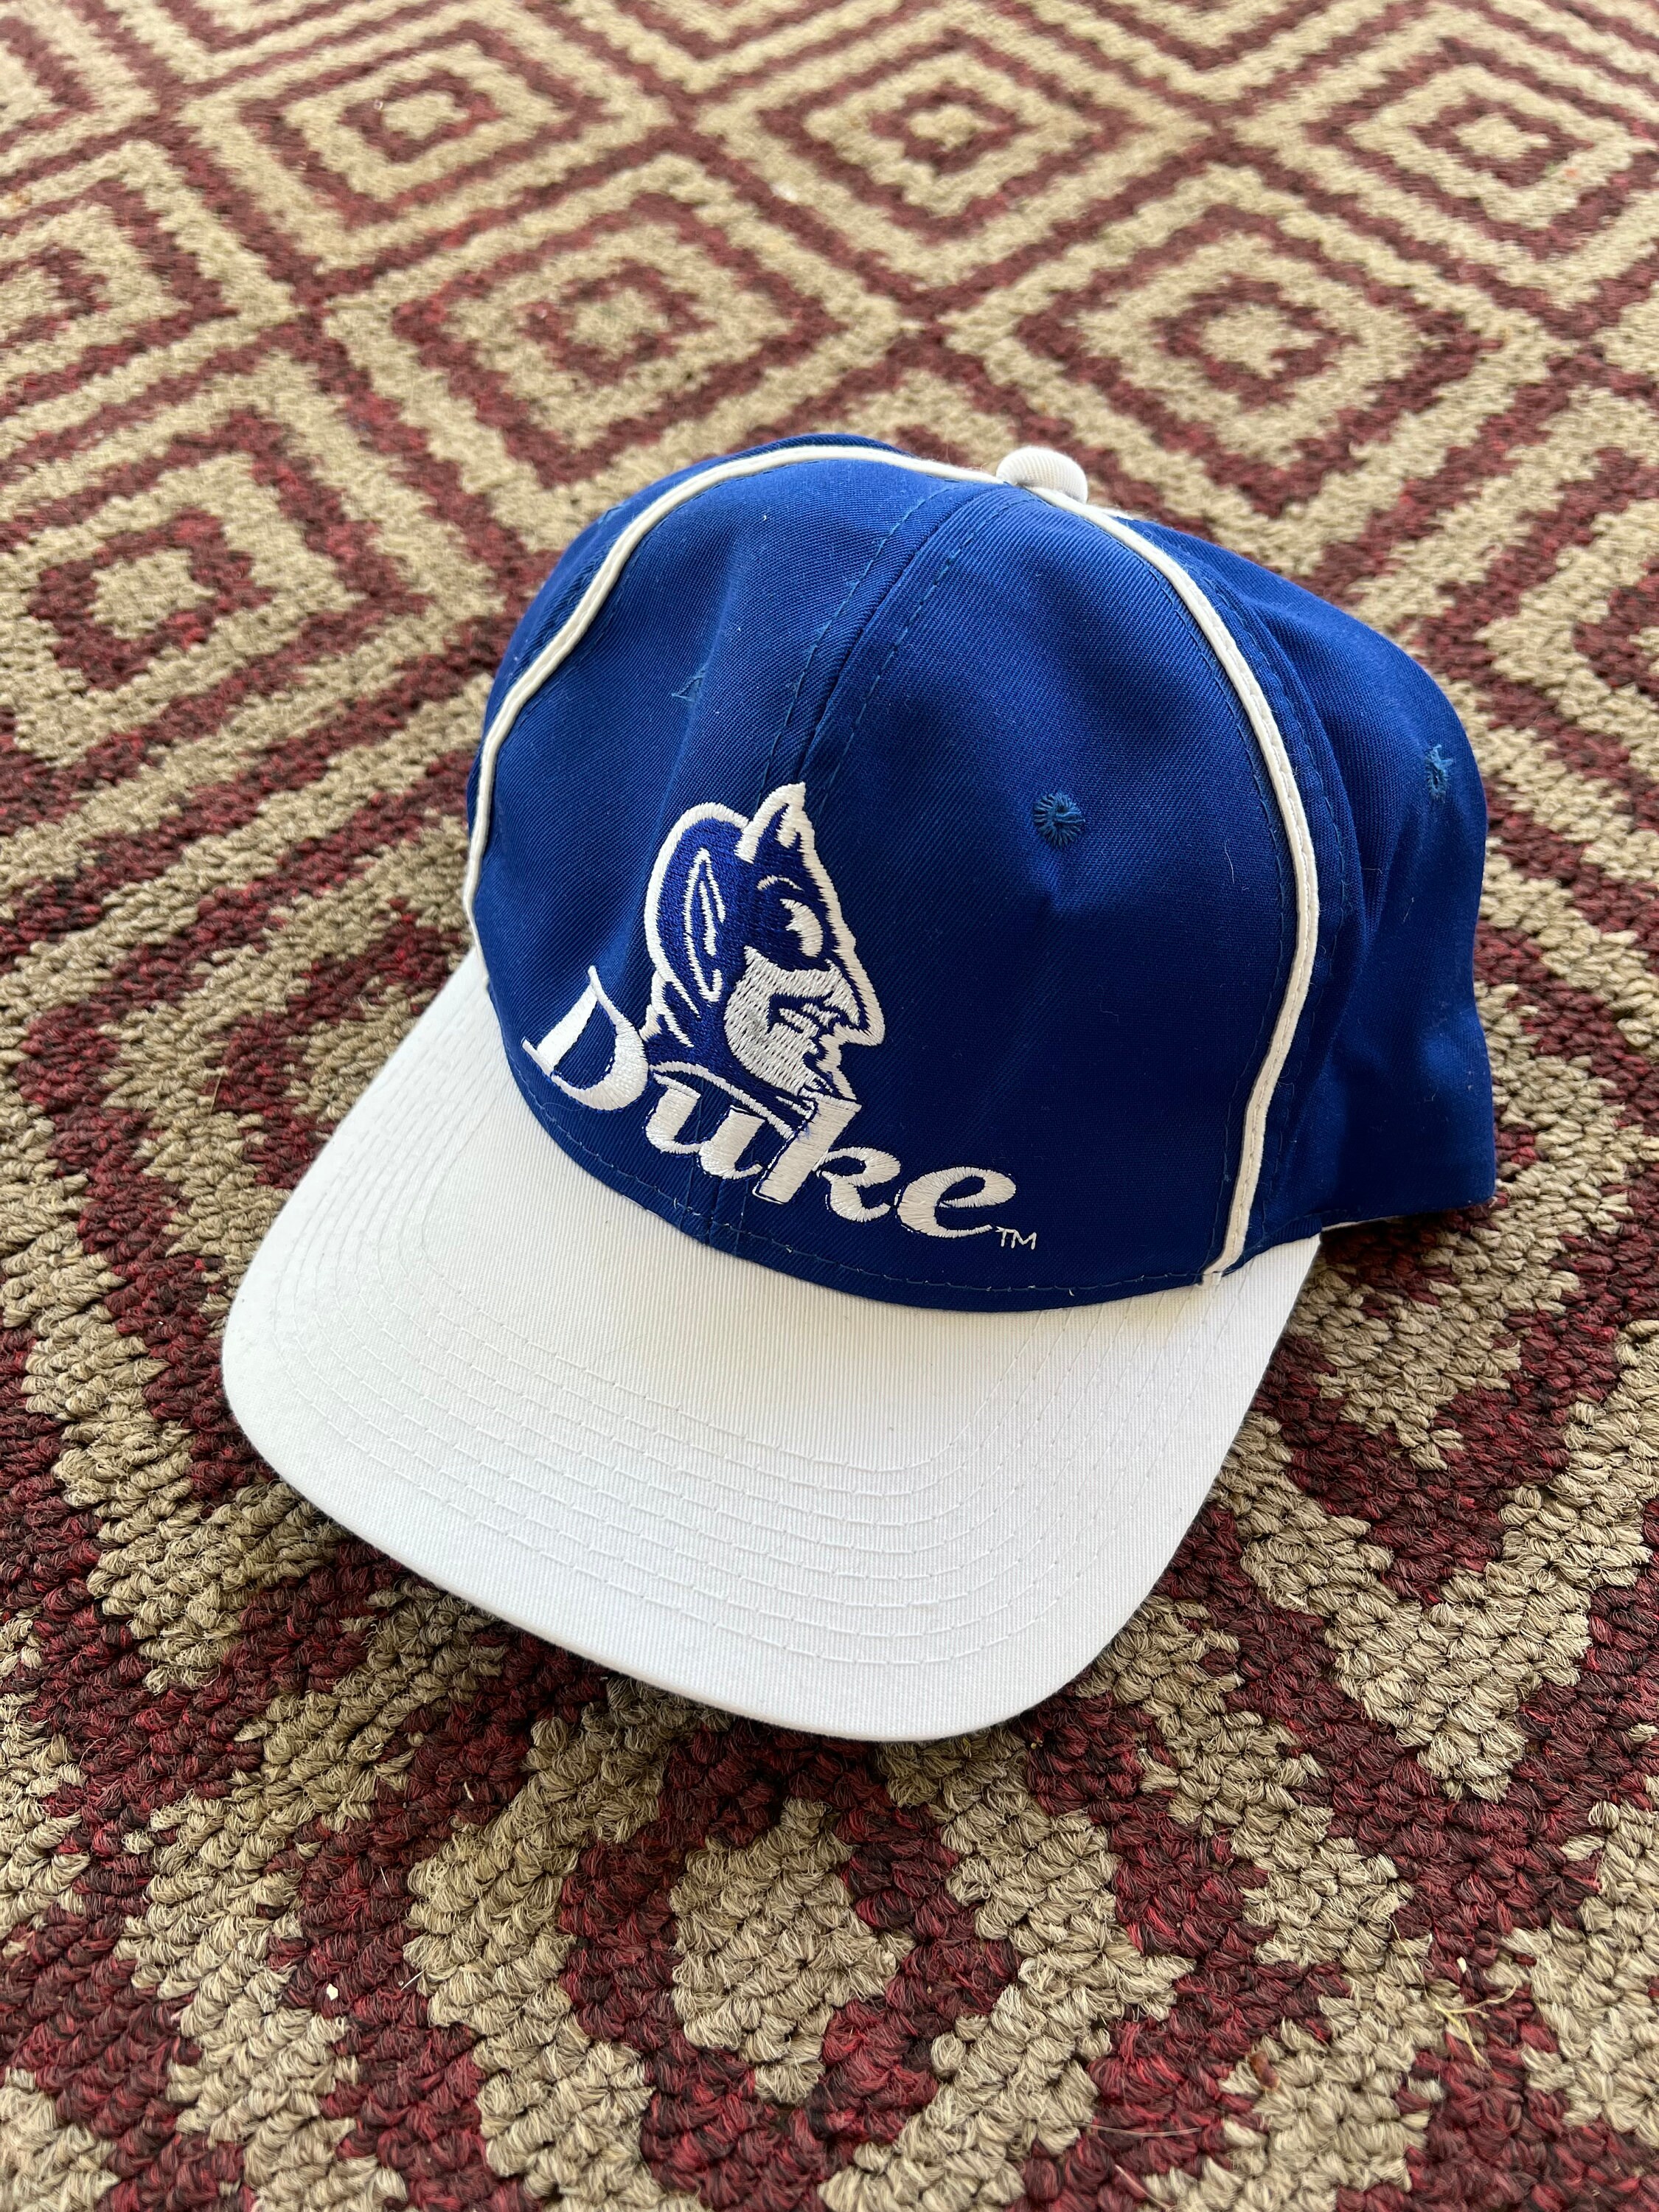 VINTAGE 90s NEW JERSEY DEVILS STARTER SNAPBACK CAP HAT – Stay Alive vintage  store